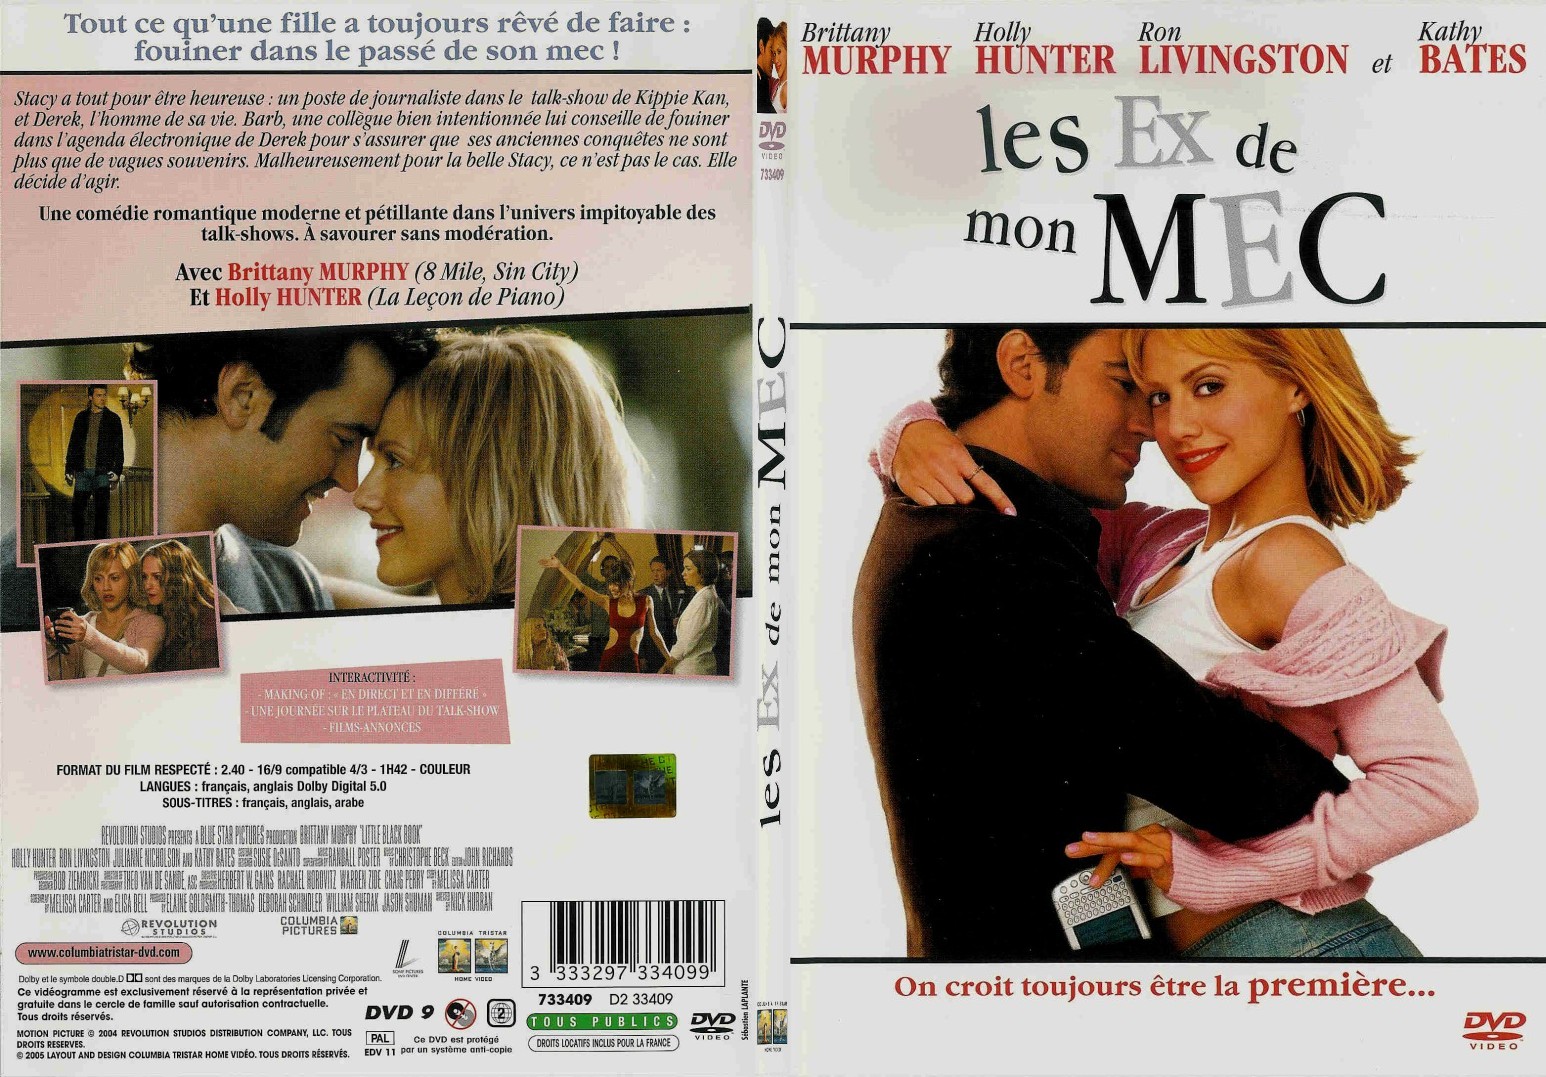 Jaquette DVD Les ex de mon mec - SLIM